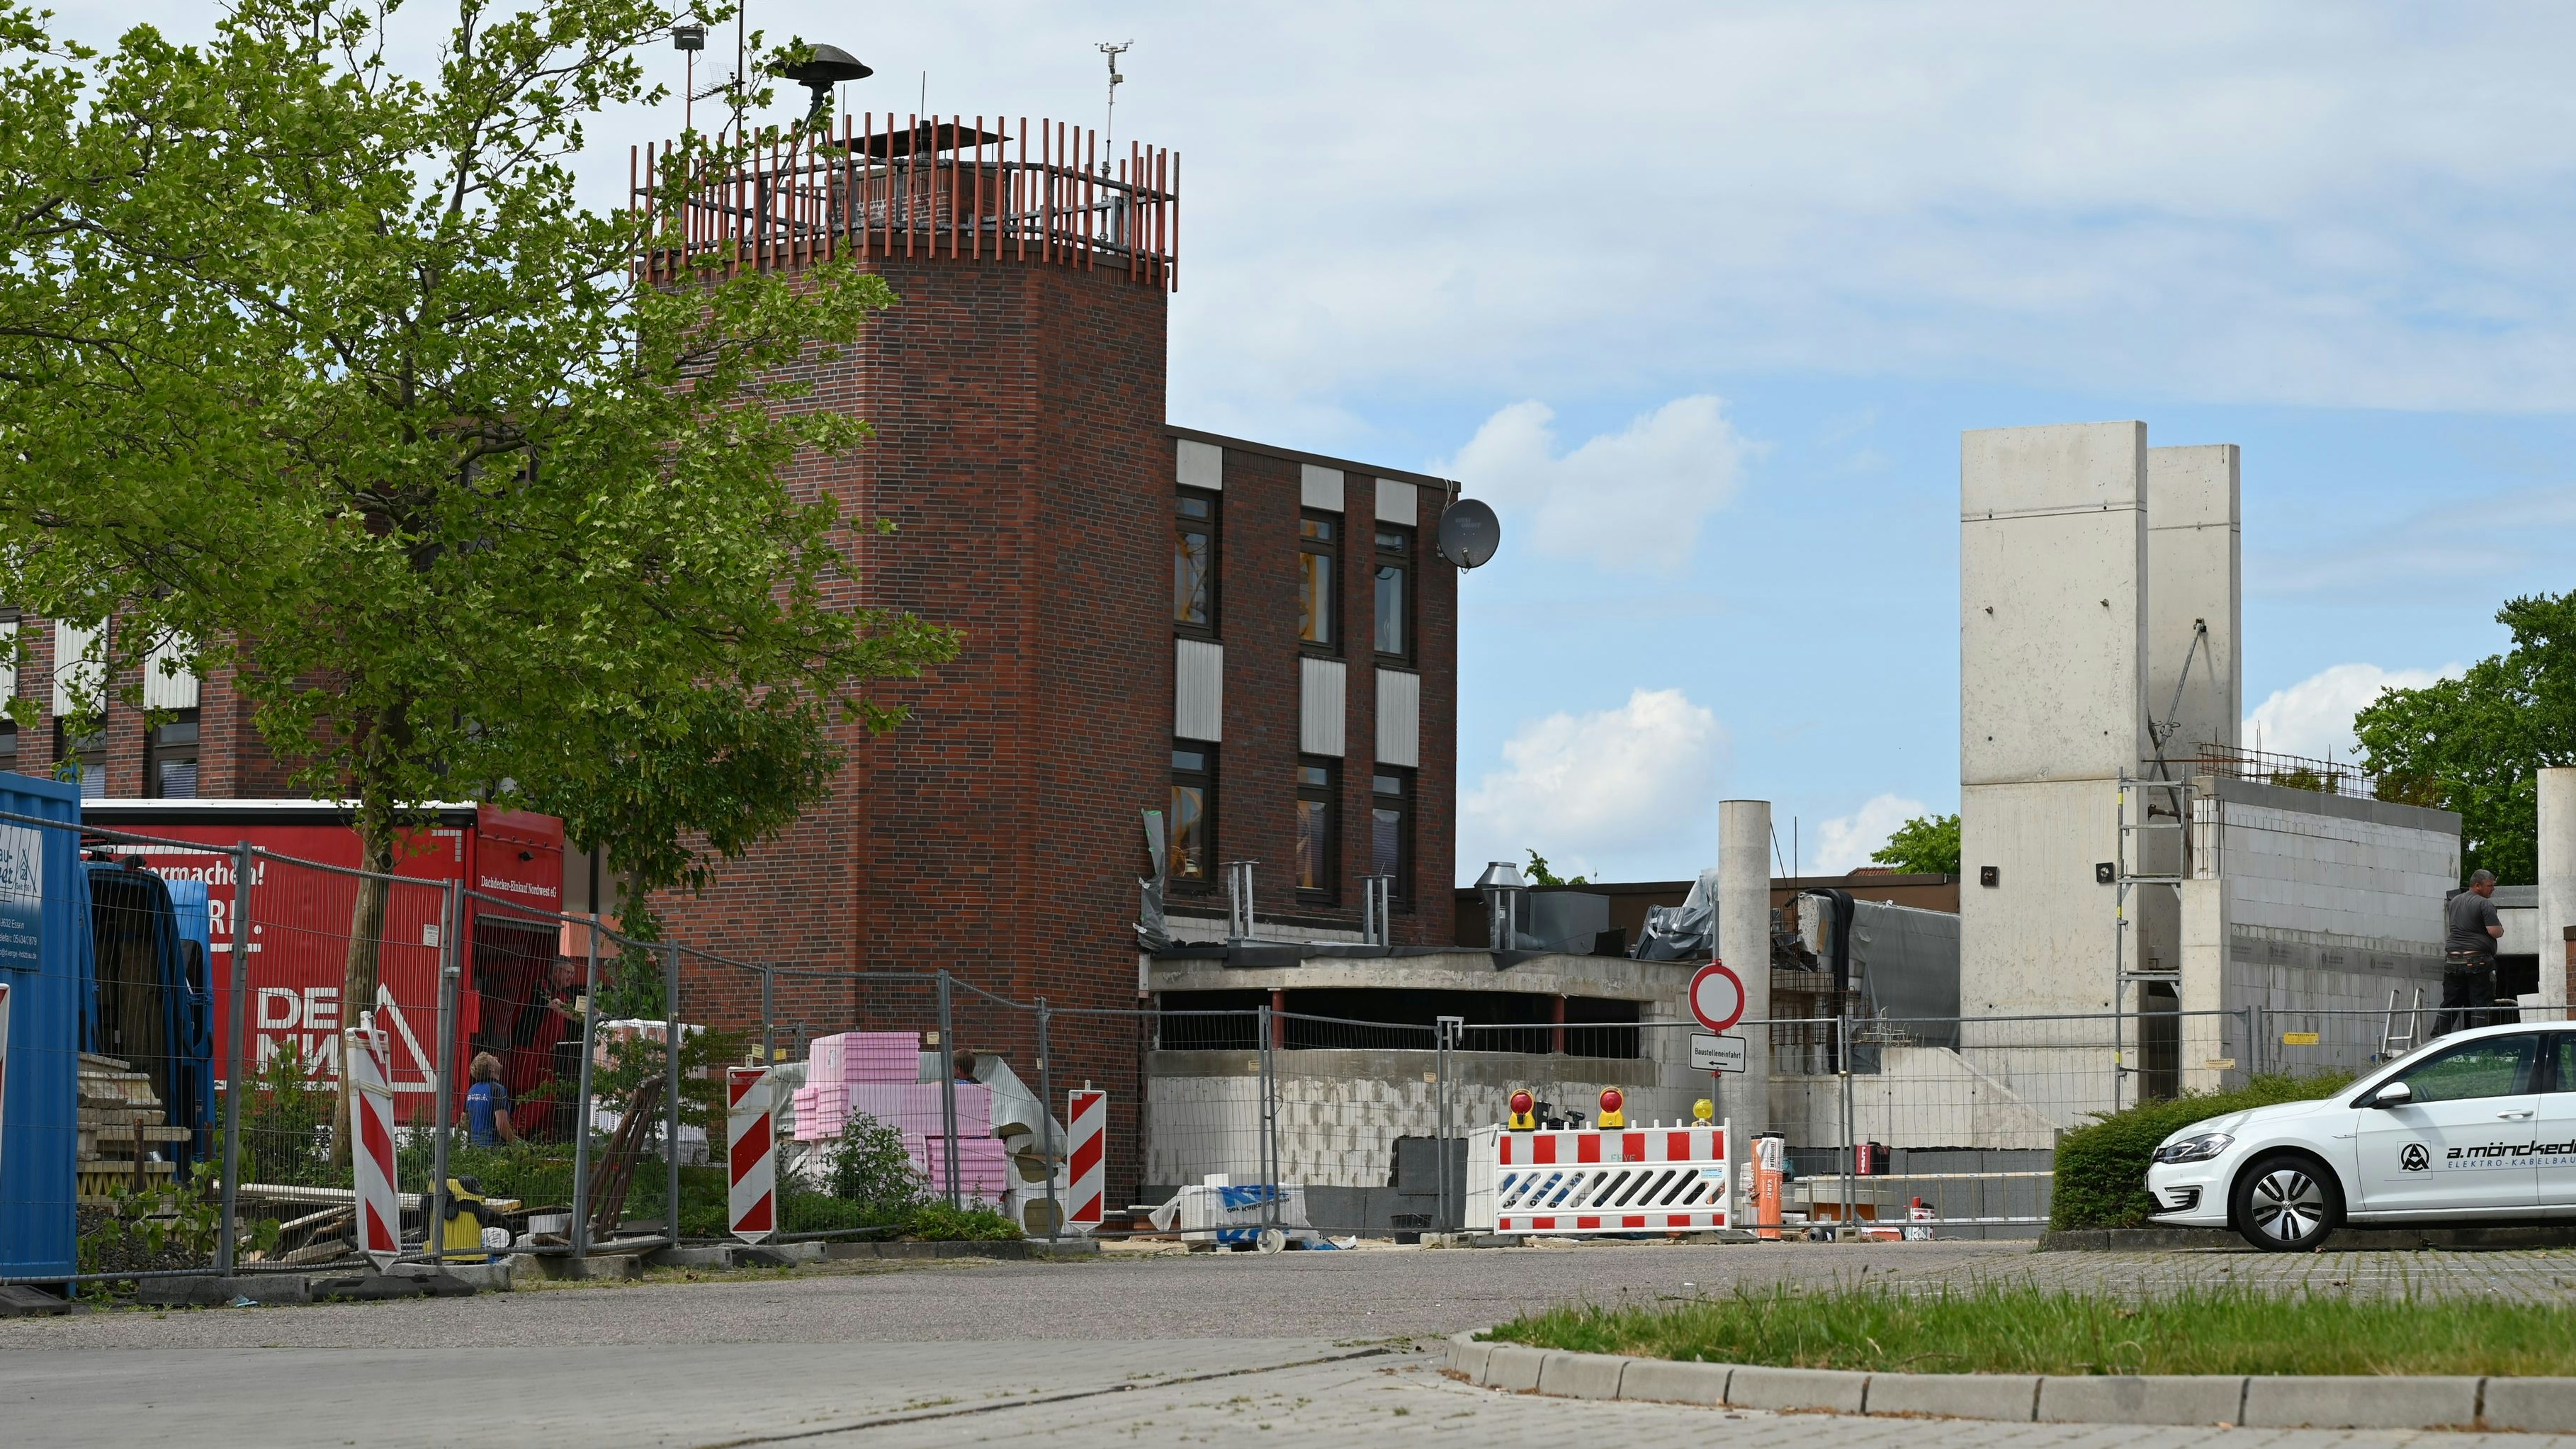 Baumaßnahme: Die Fertigstellung des Feuerwehrhauses wird teurer und verzögert sich. Foto: Hermes